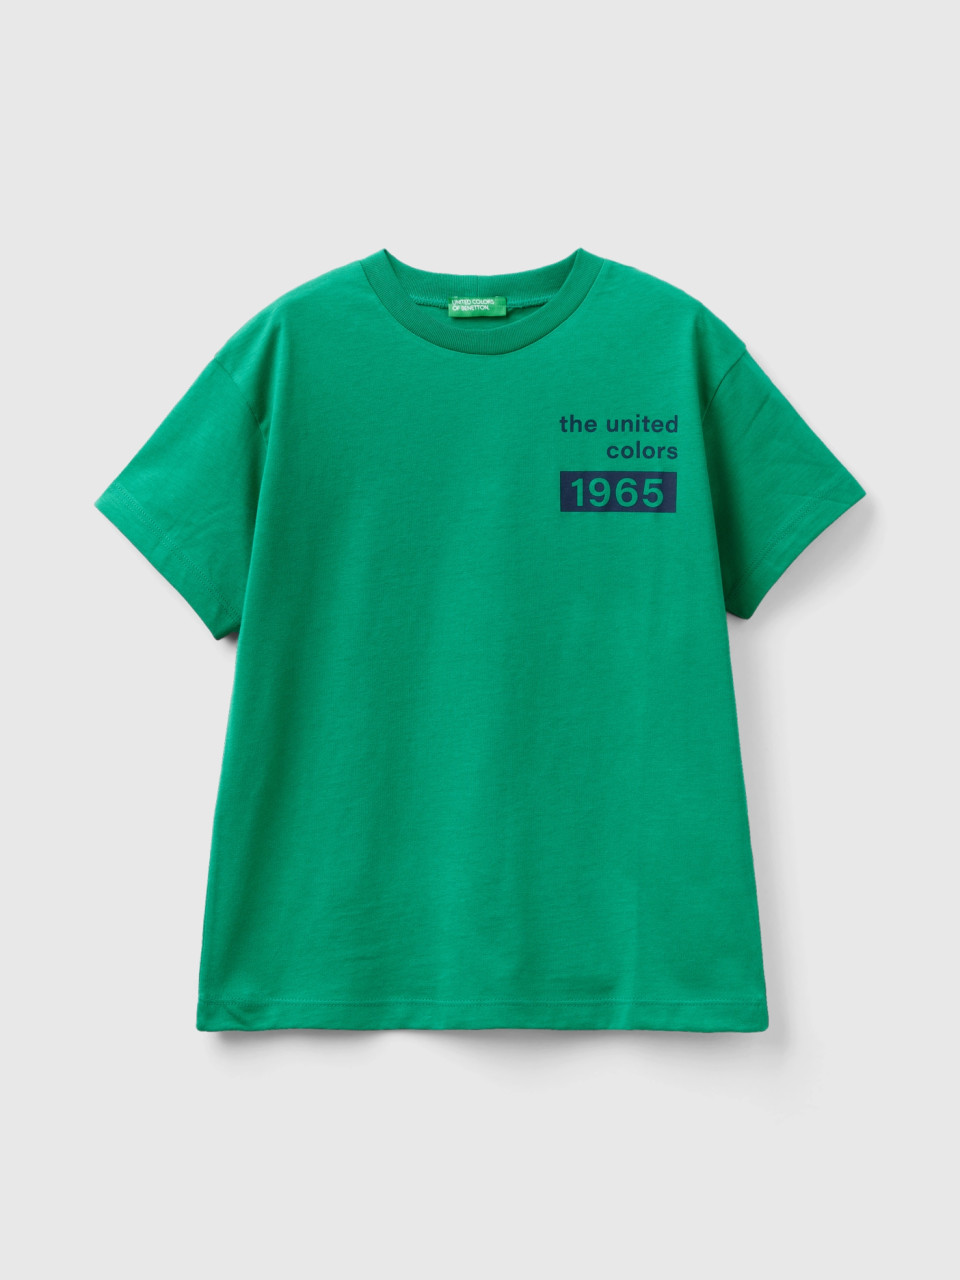 Benetton, T-shirt Aus 100% Baumwolle Mit Logo, Grün, male